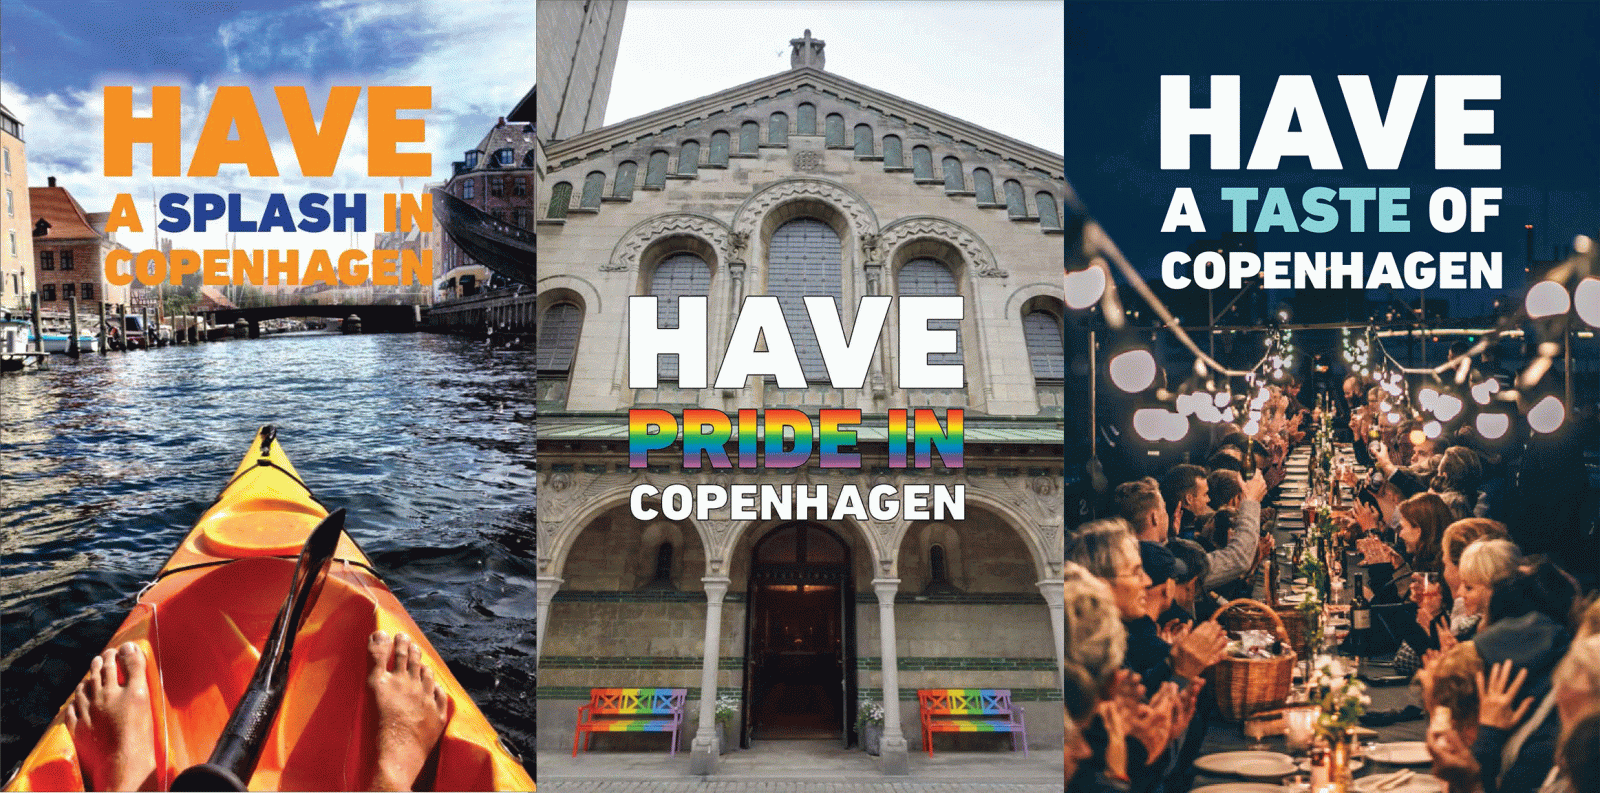 København byder eventgæster velkommen med værktøj | Wonderful Copenhagen